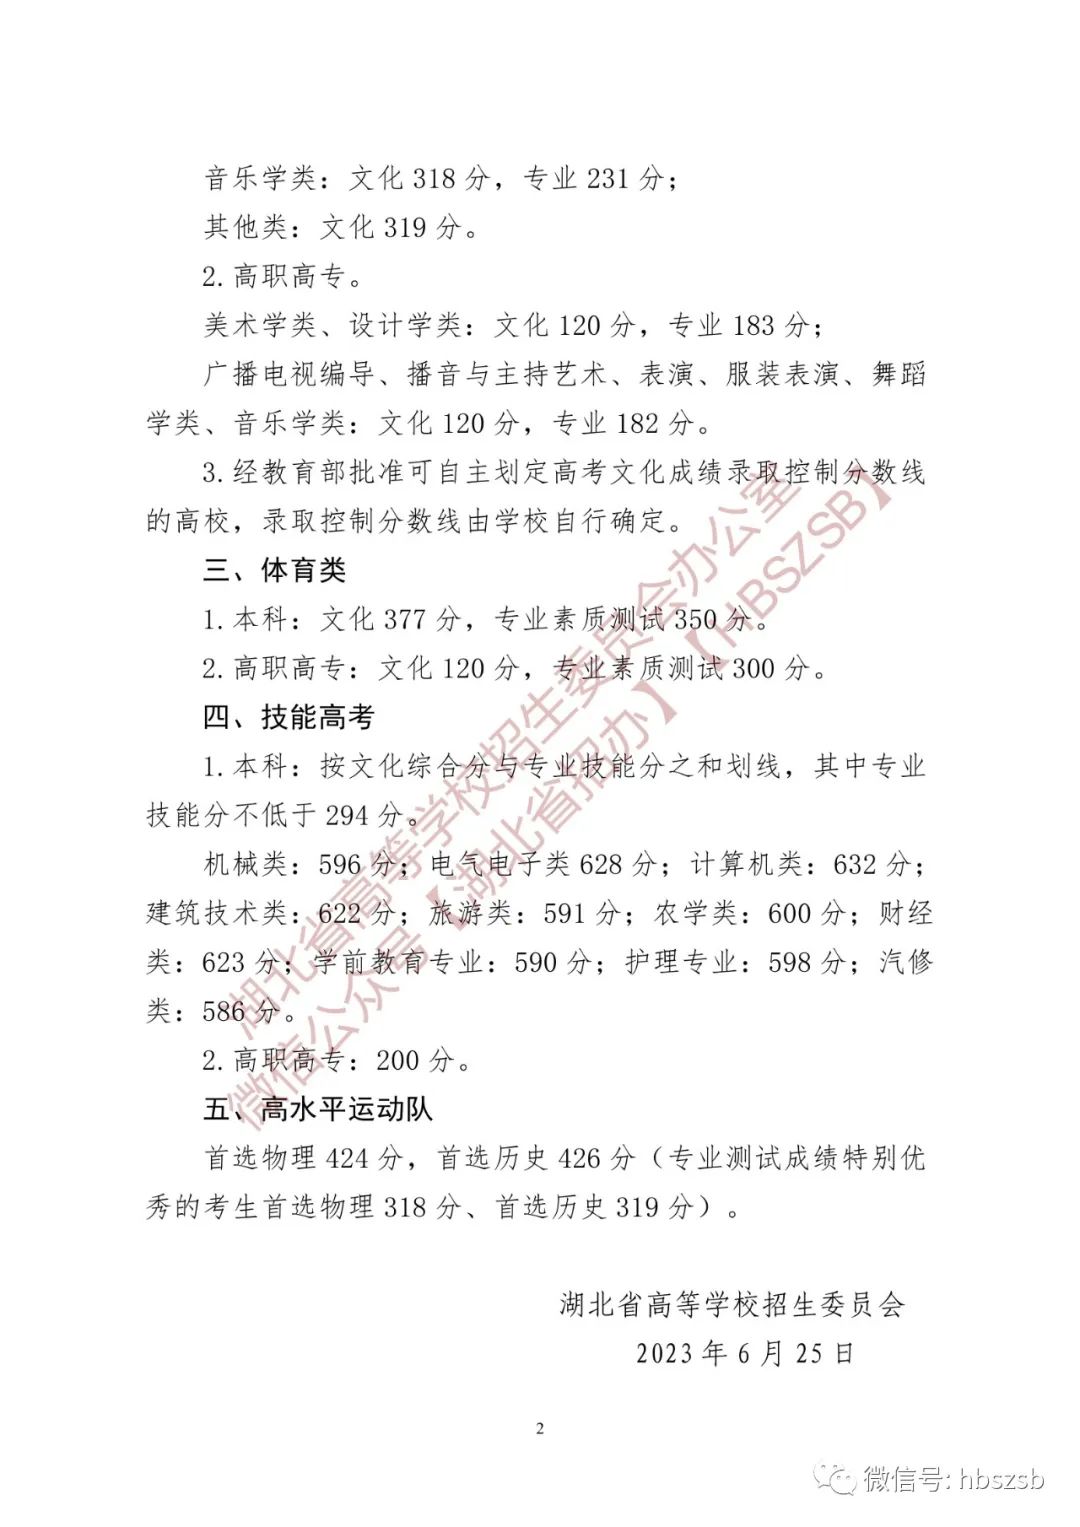 省招委關于2023年湖北省普通高校招生音樂舞蹈類錄取控制分數線的通知